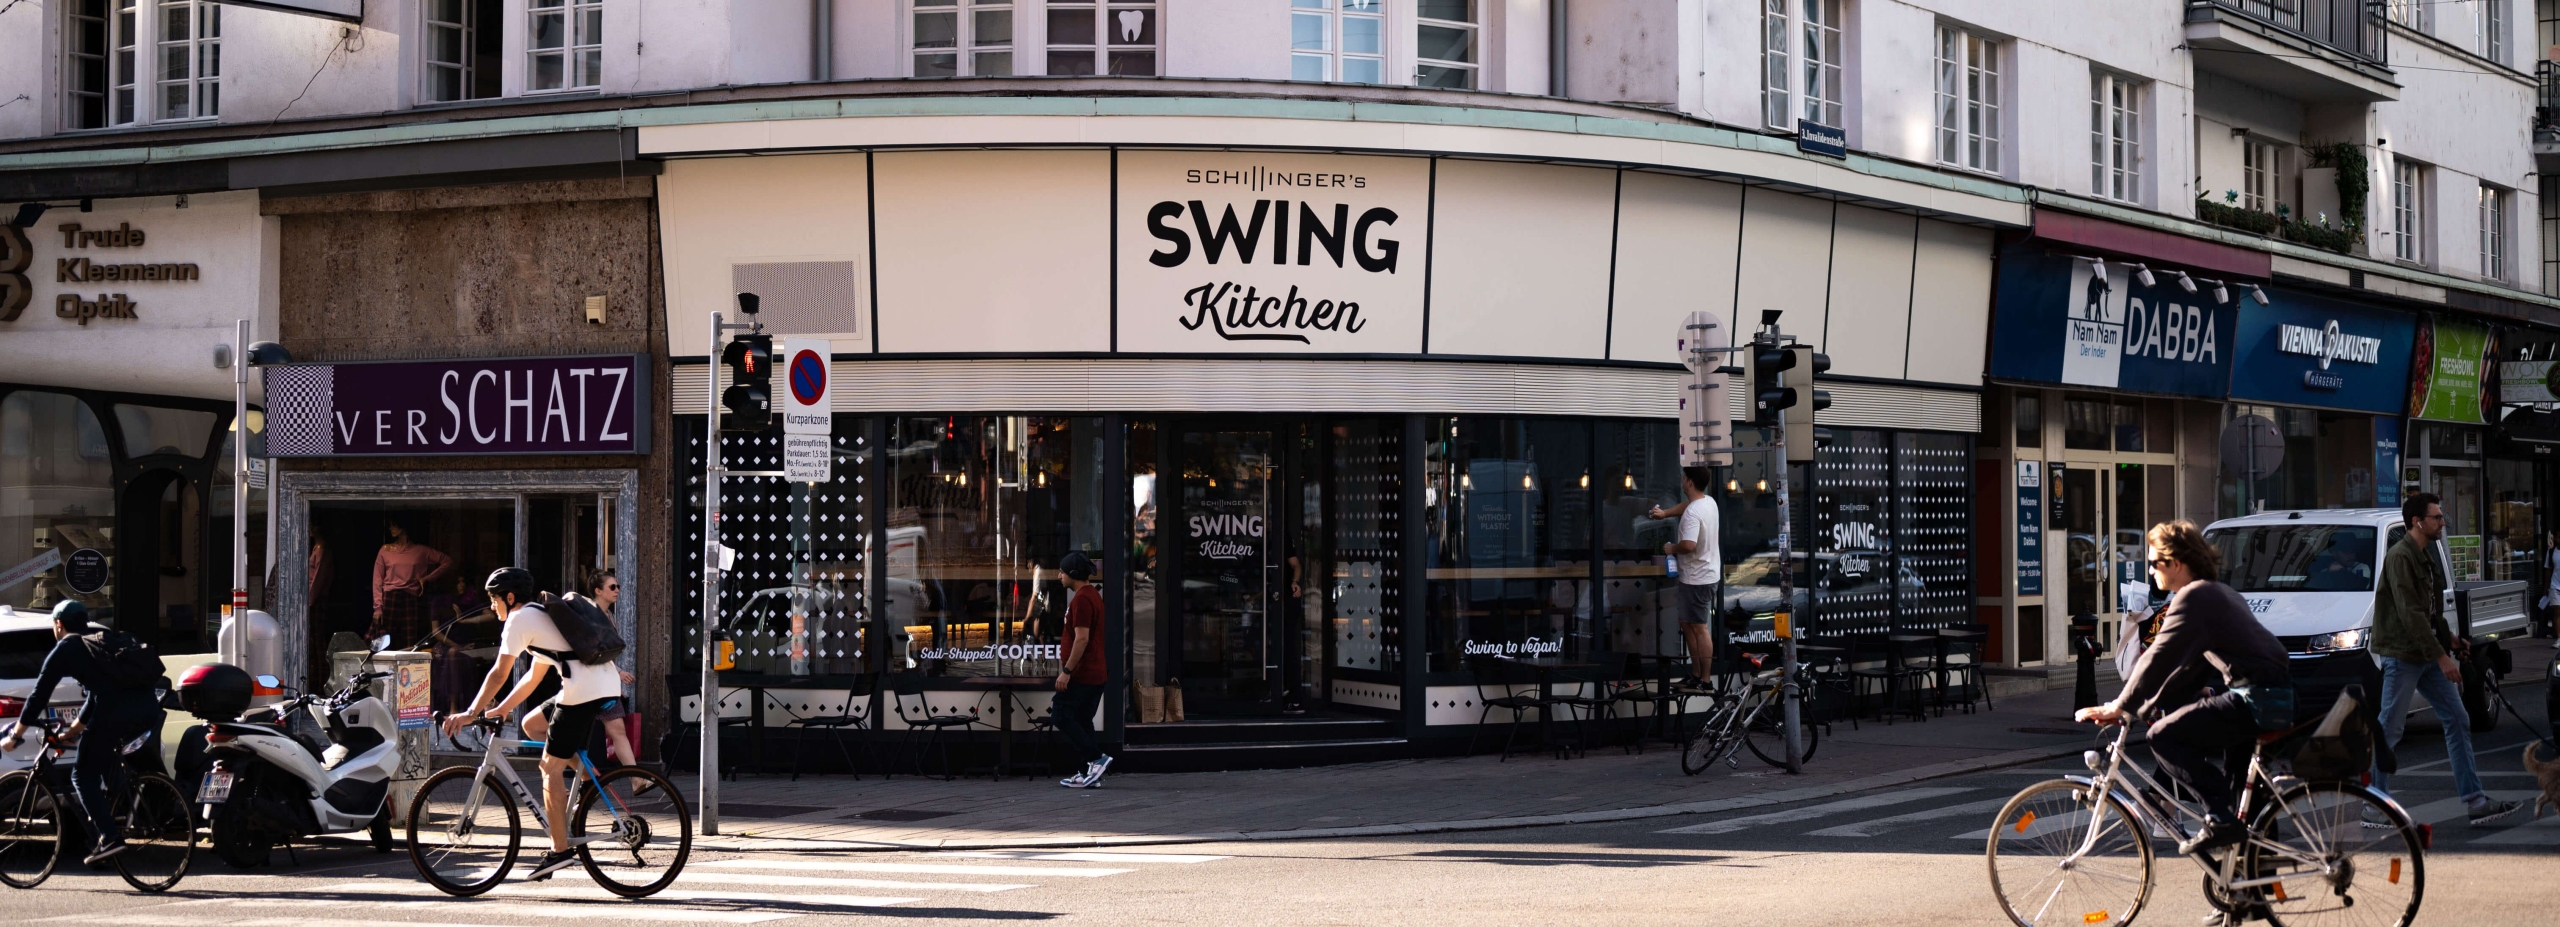 swing-kitchen-invalidenstrasse-restaurant-1